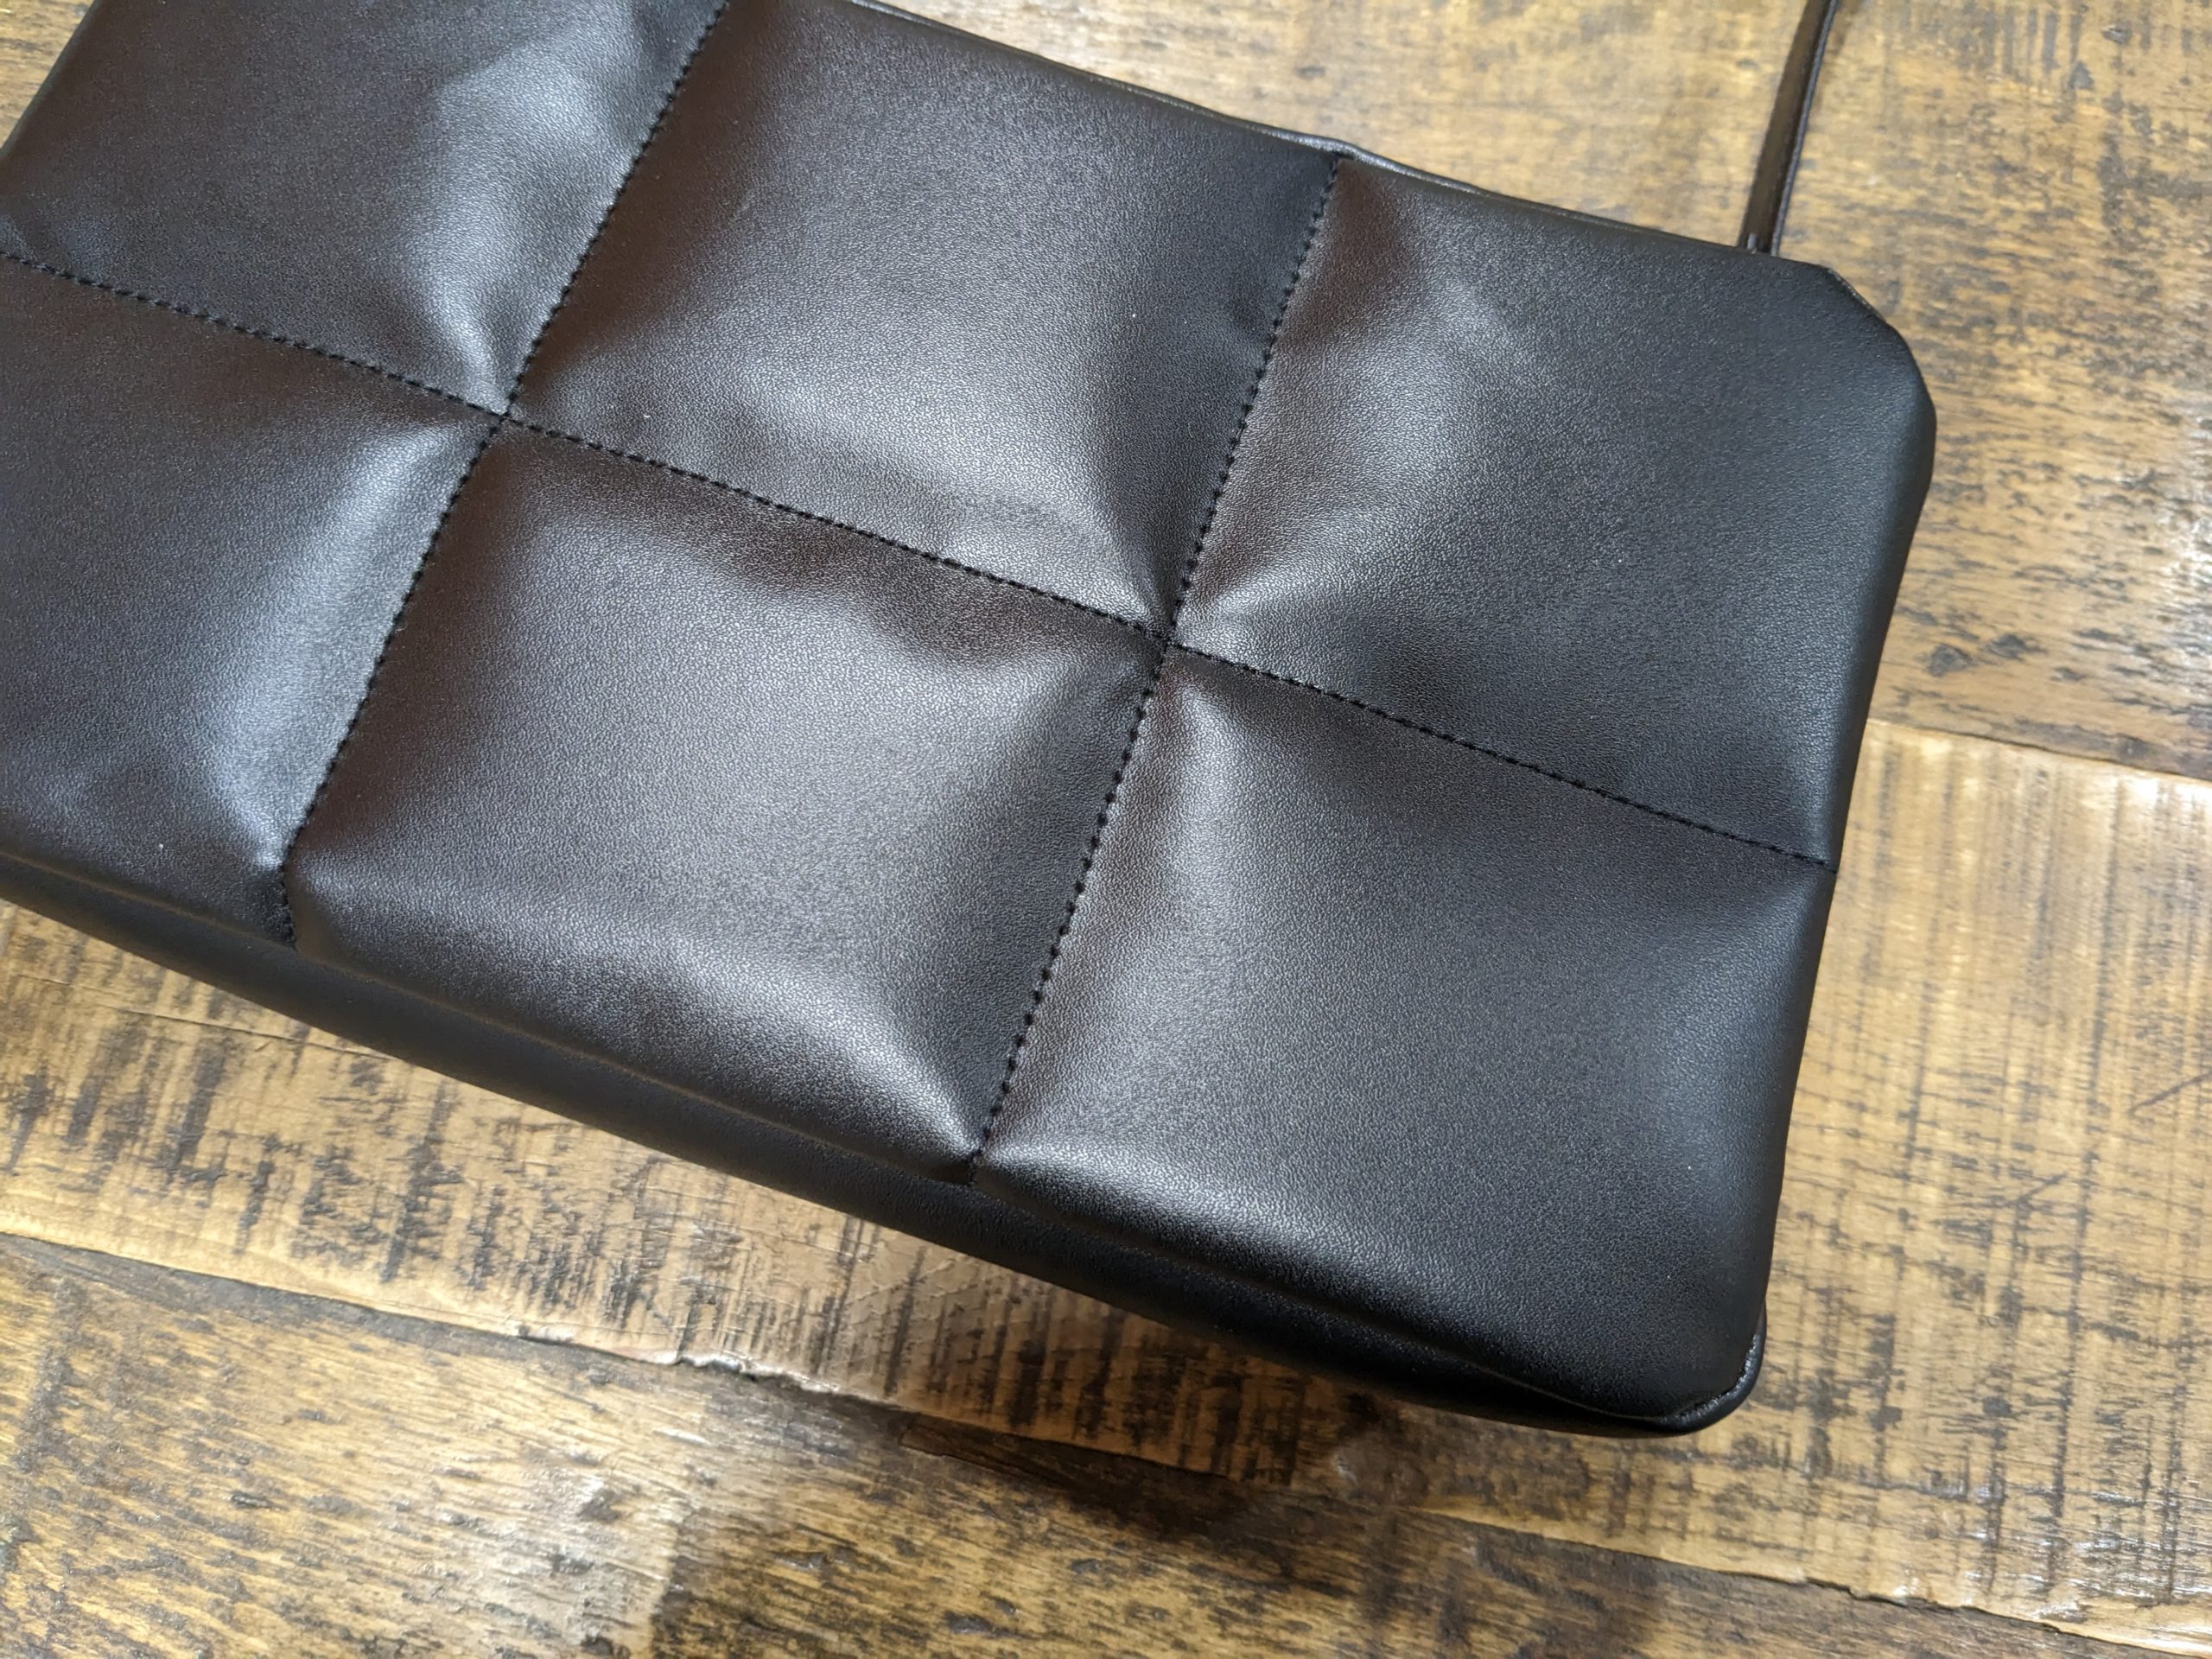 付録のブロックステッチデザインが特徴的な黒いショルダーバッグ